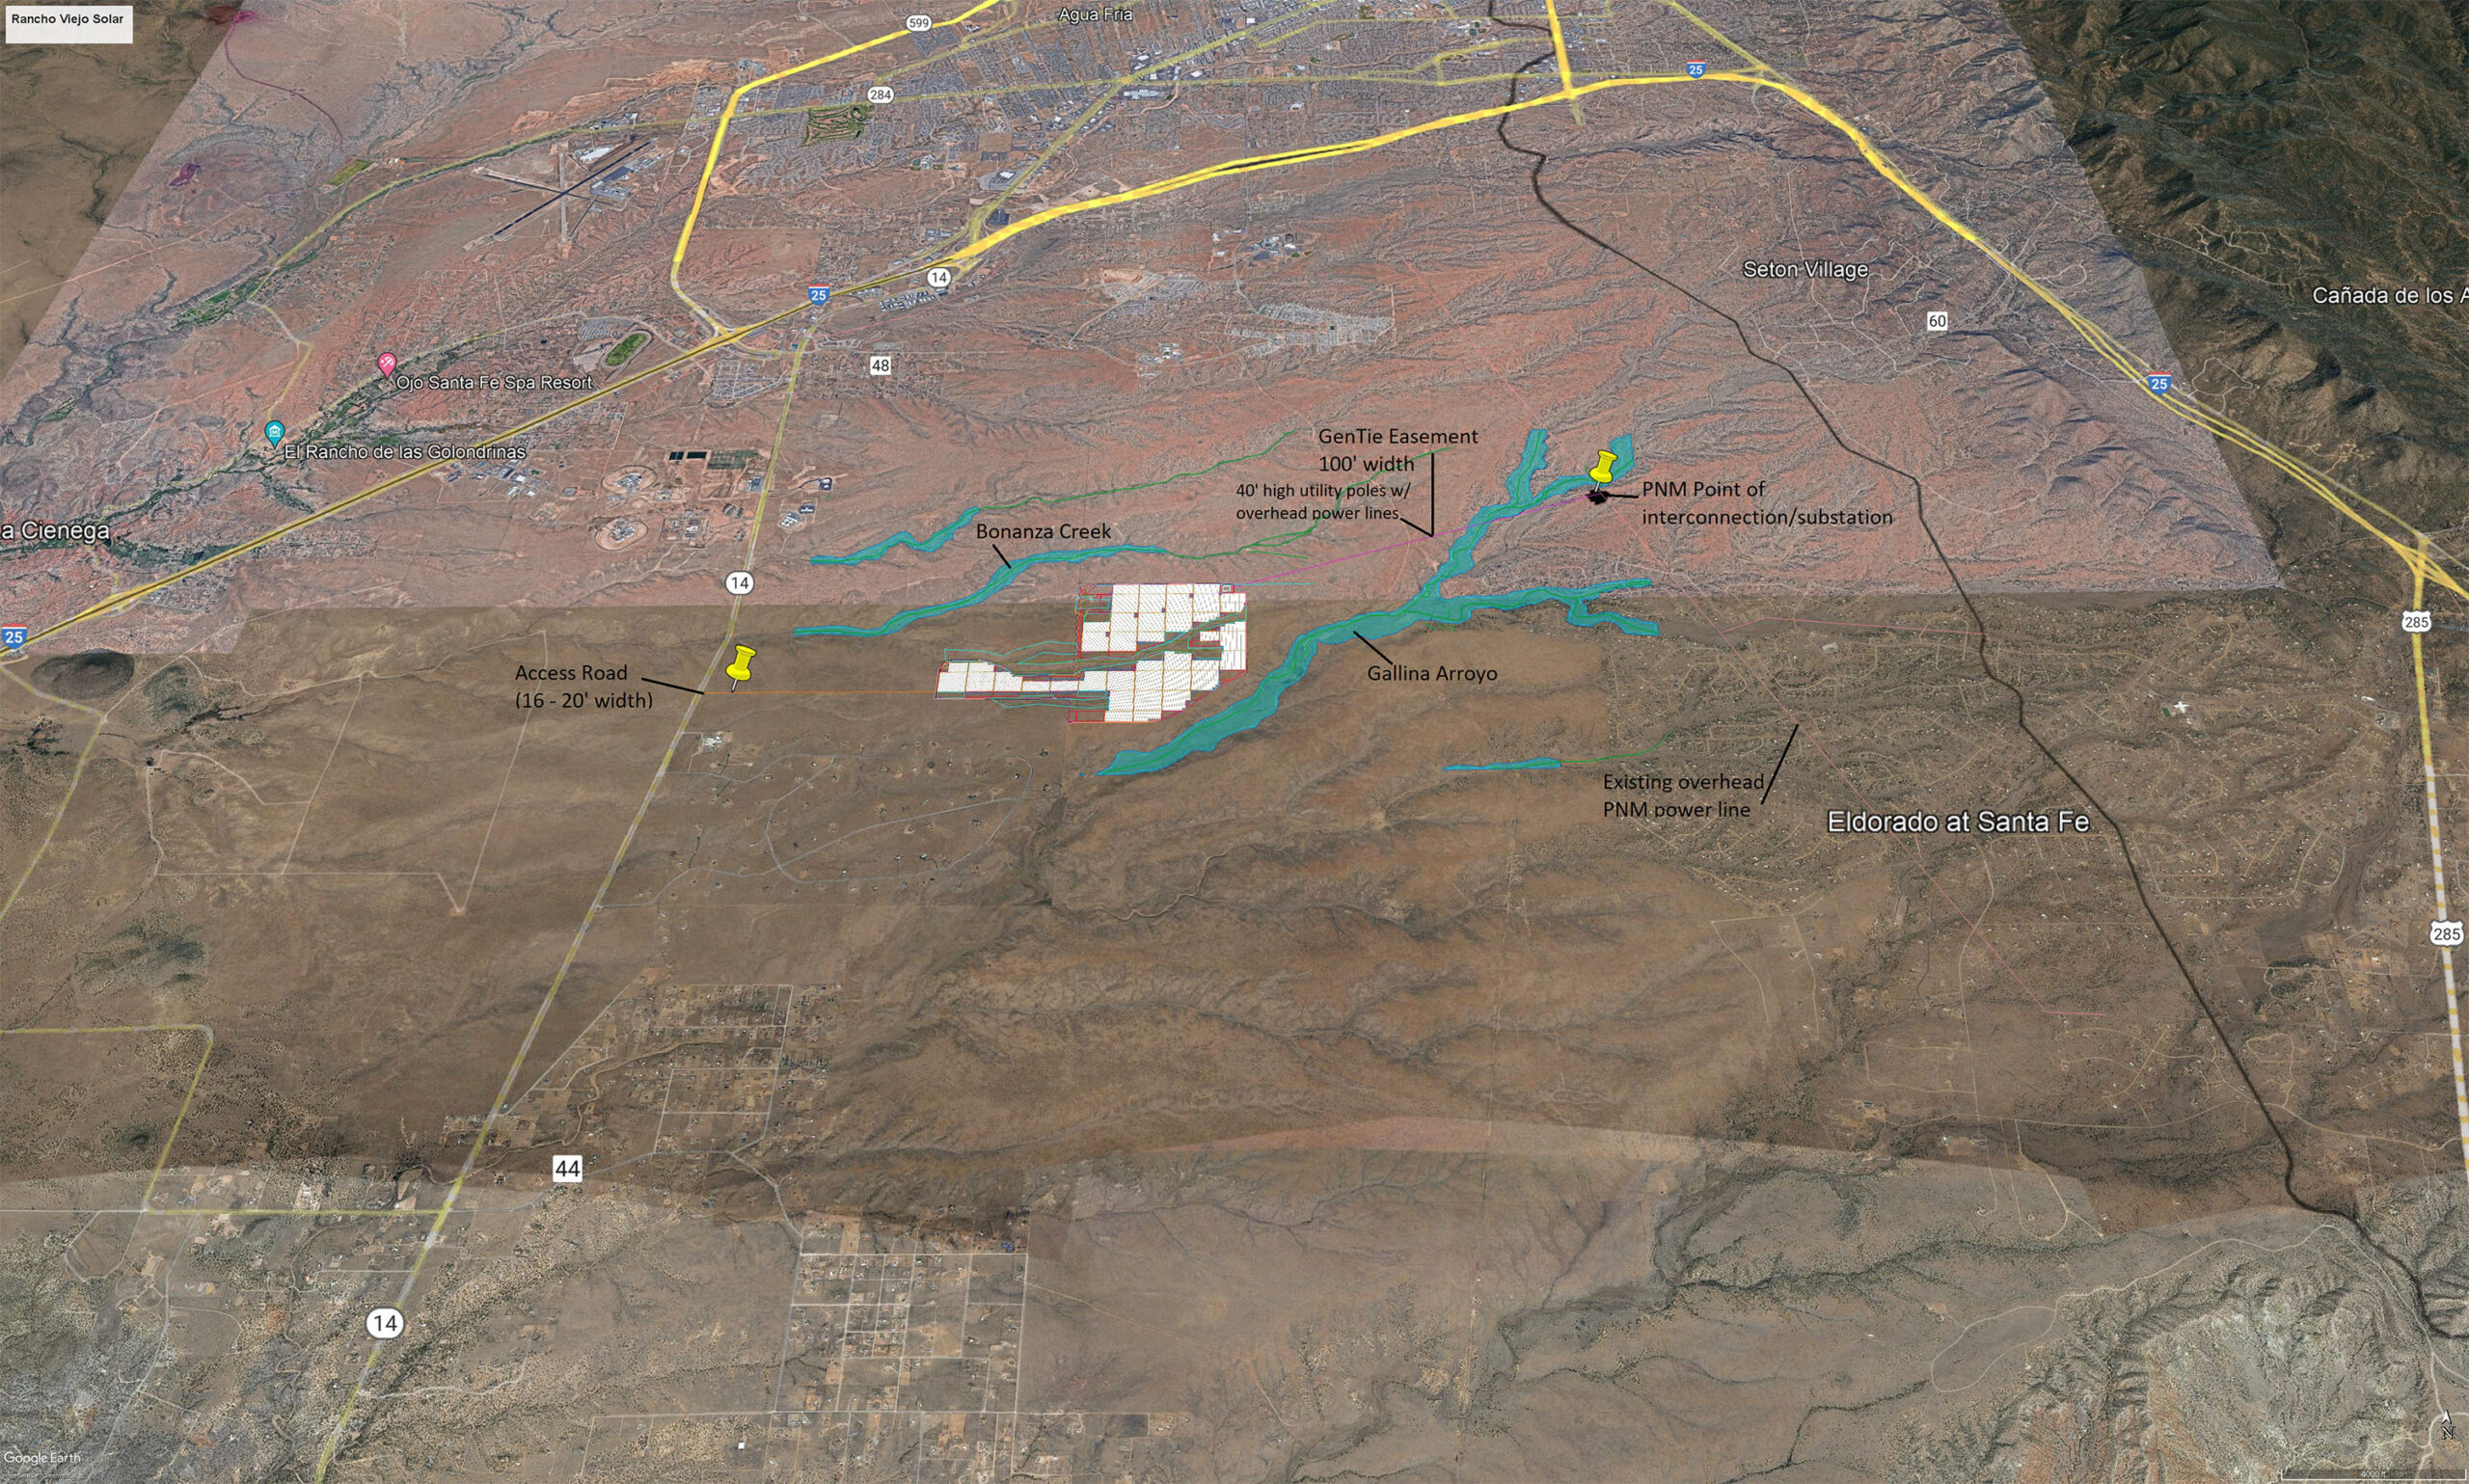 AES Rancho Viejo Utility-Scale-Solar Power Facility Map - Santa Fe New Mexico